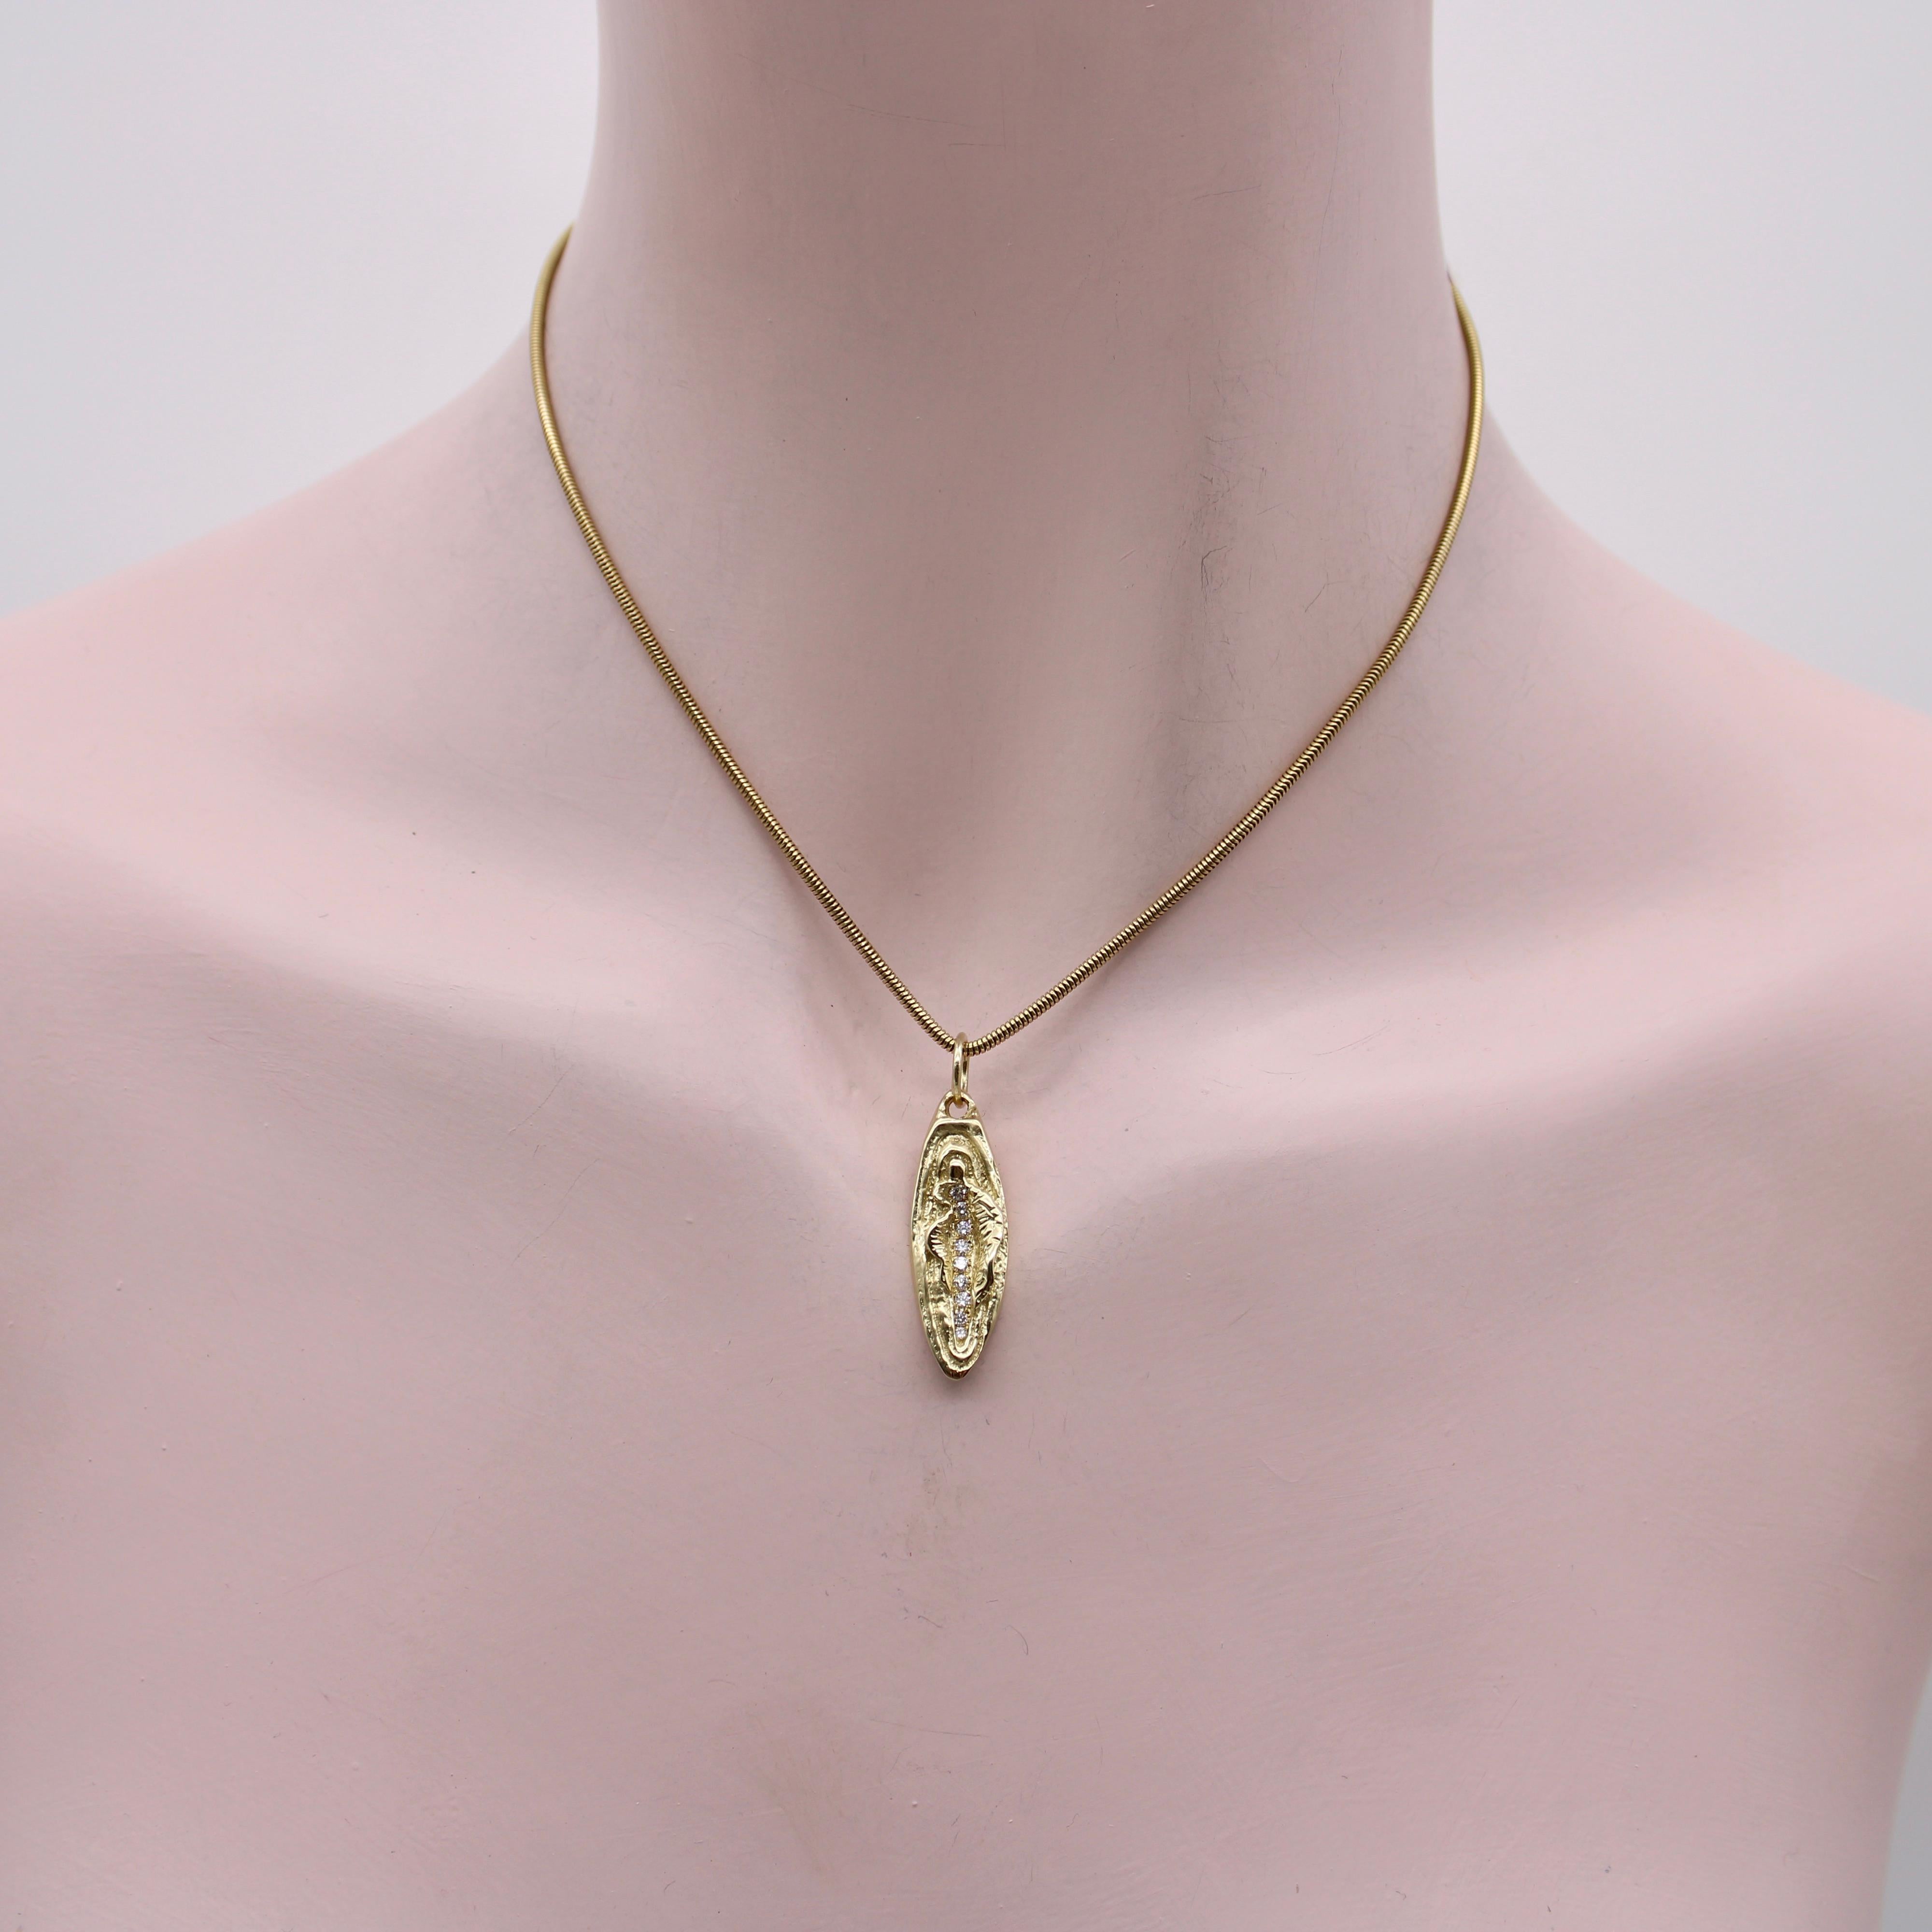 guam necklace 14k gold